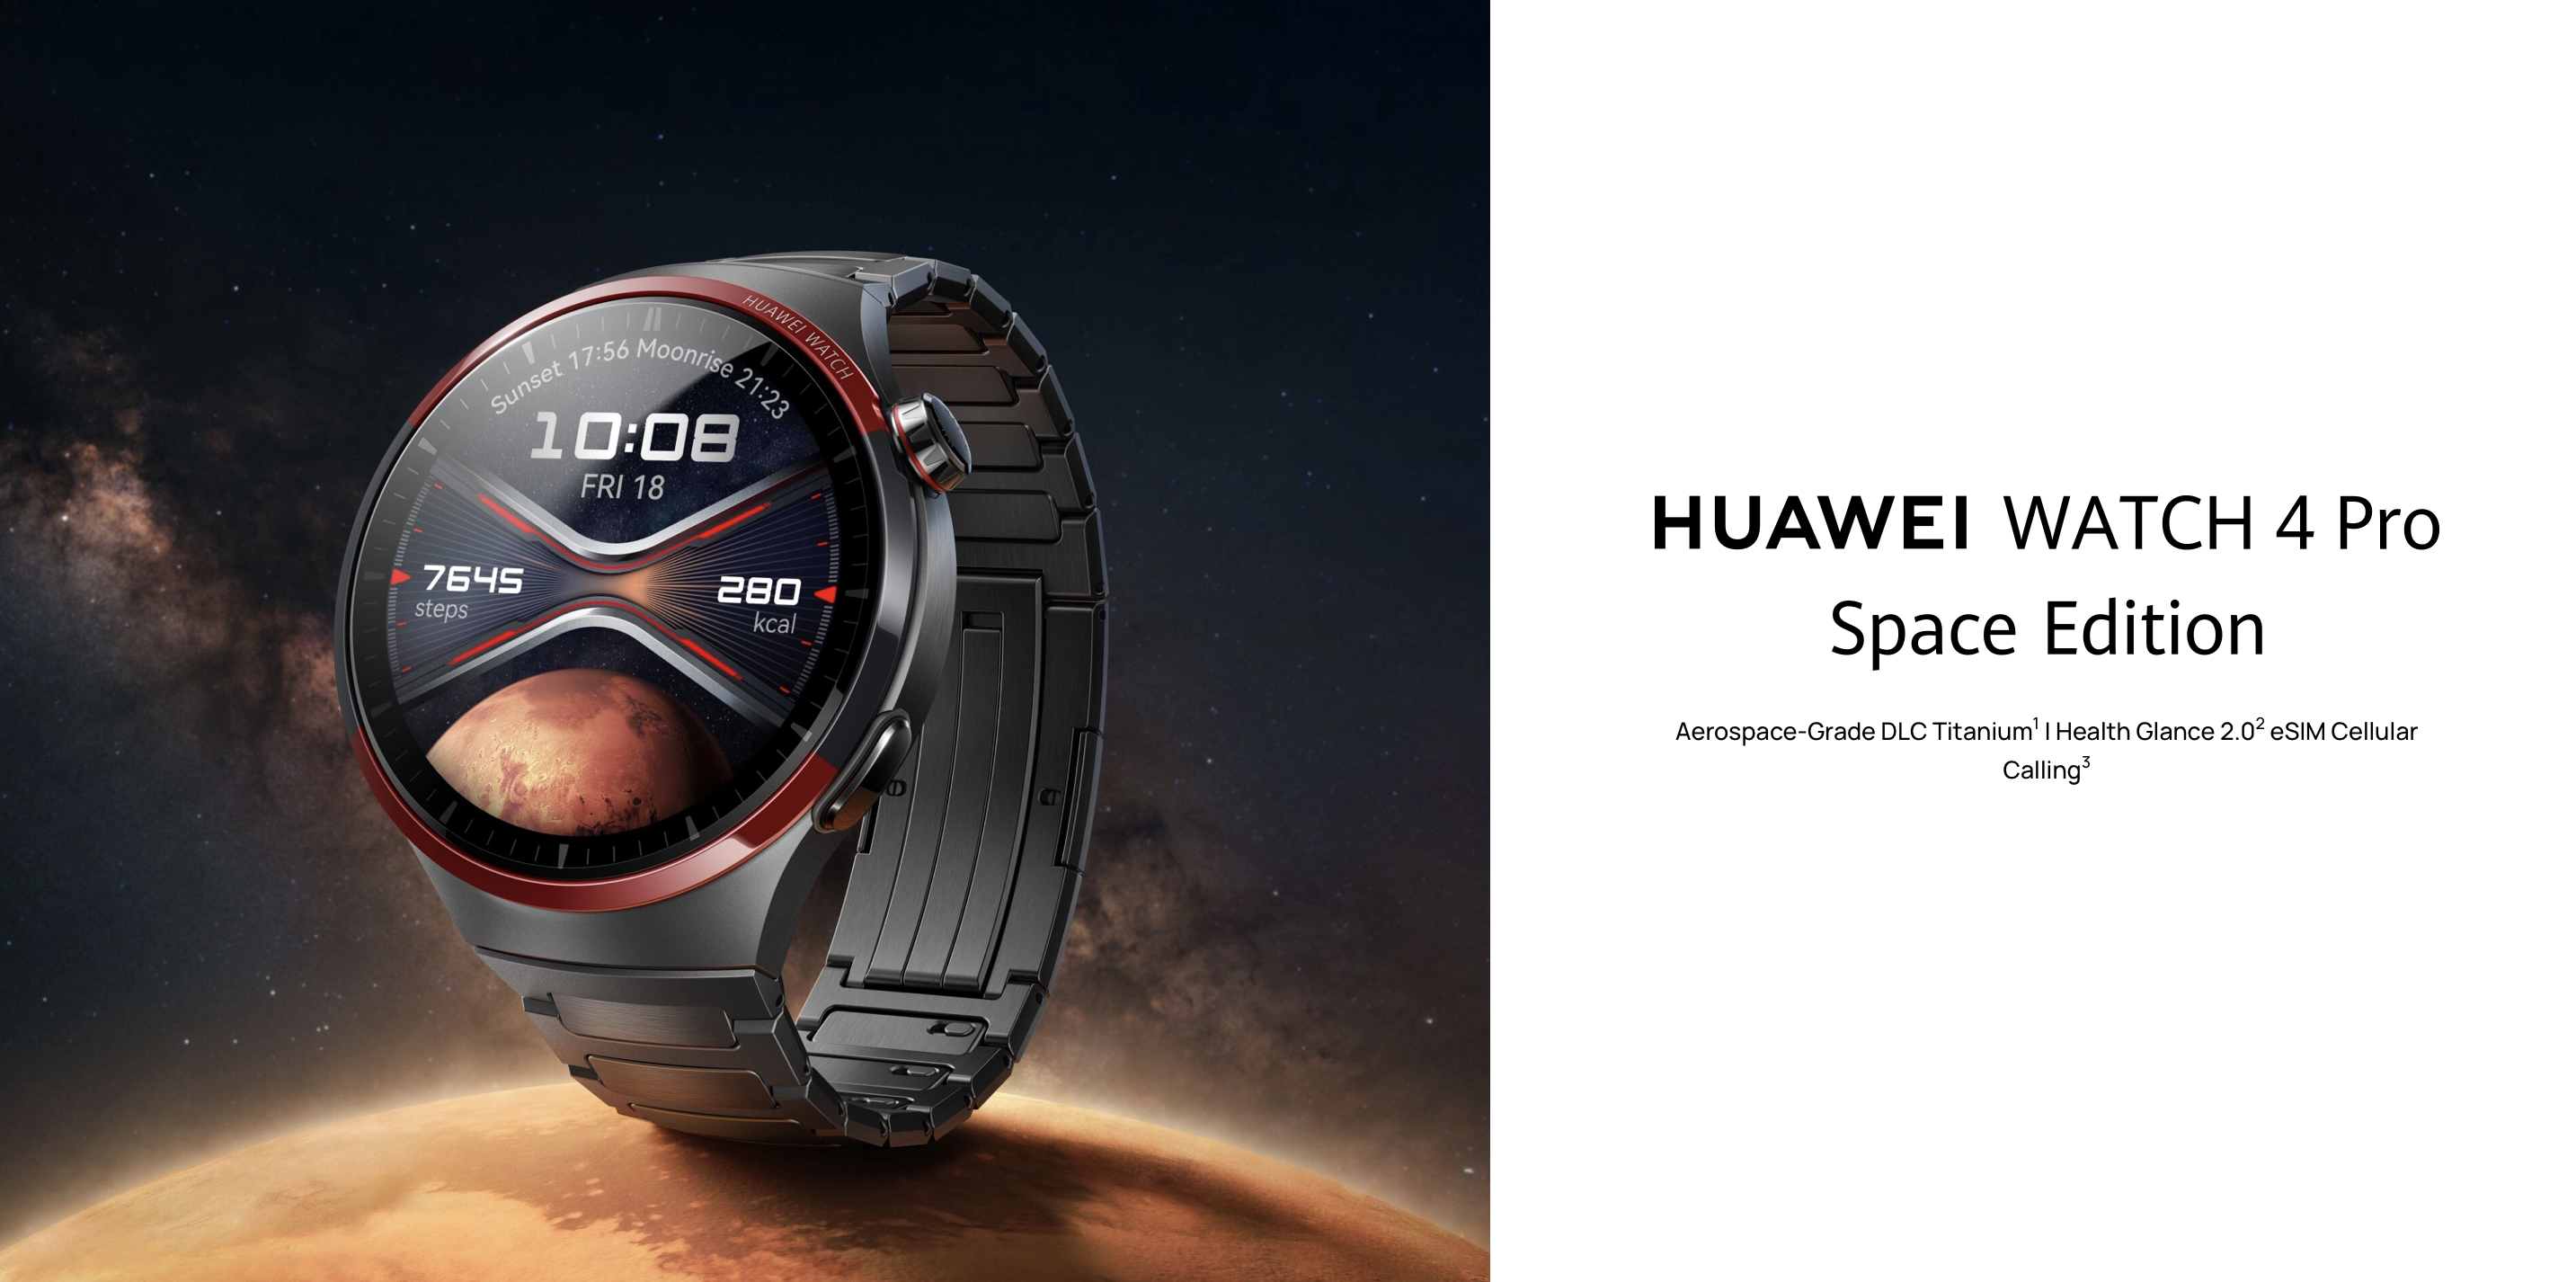 De Huawei Watch 4 Pro Space Edition met een titanium behuizing, saffierglas en een prijs van €649 heeft zijn wereldwijde debuut gemaakt.